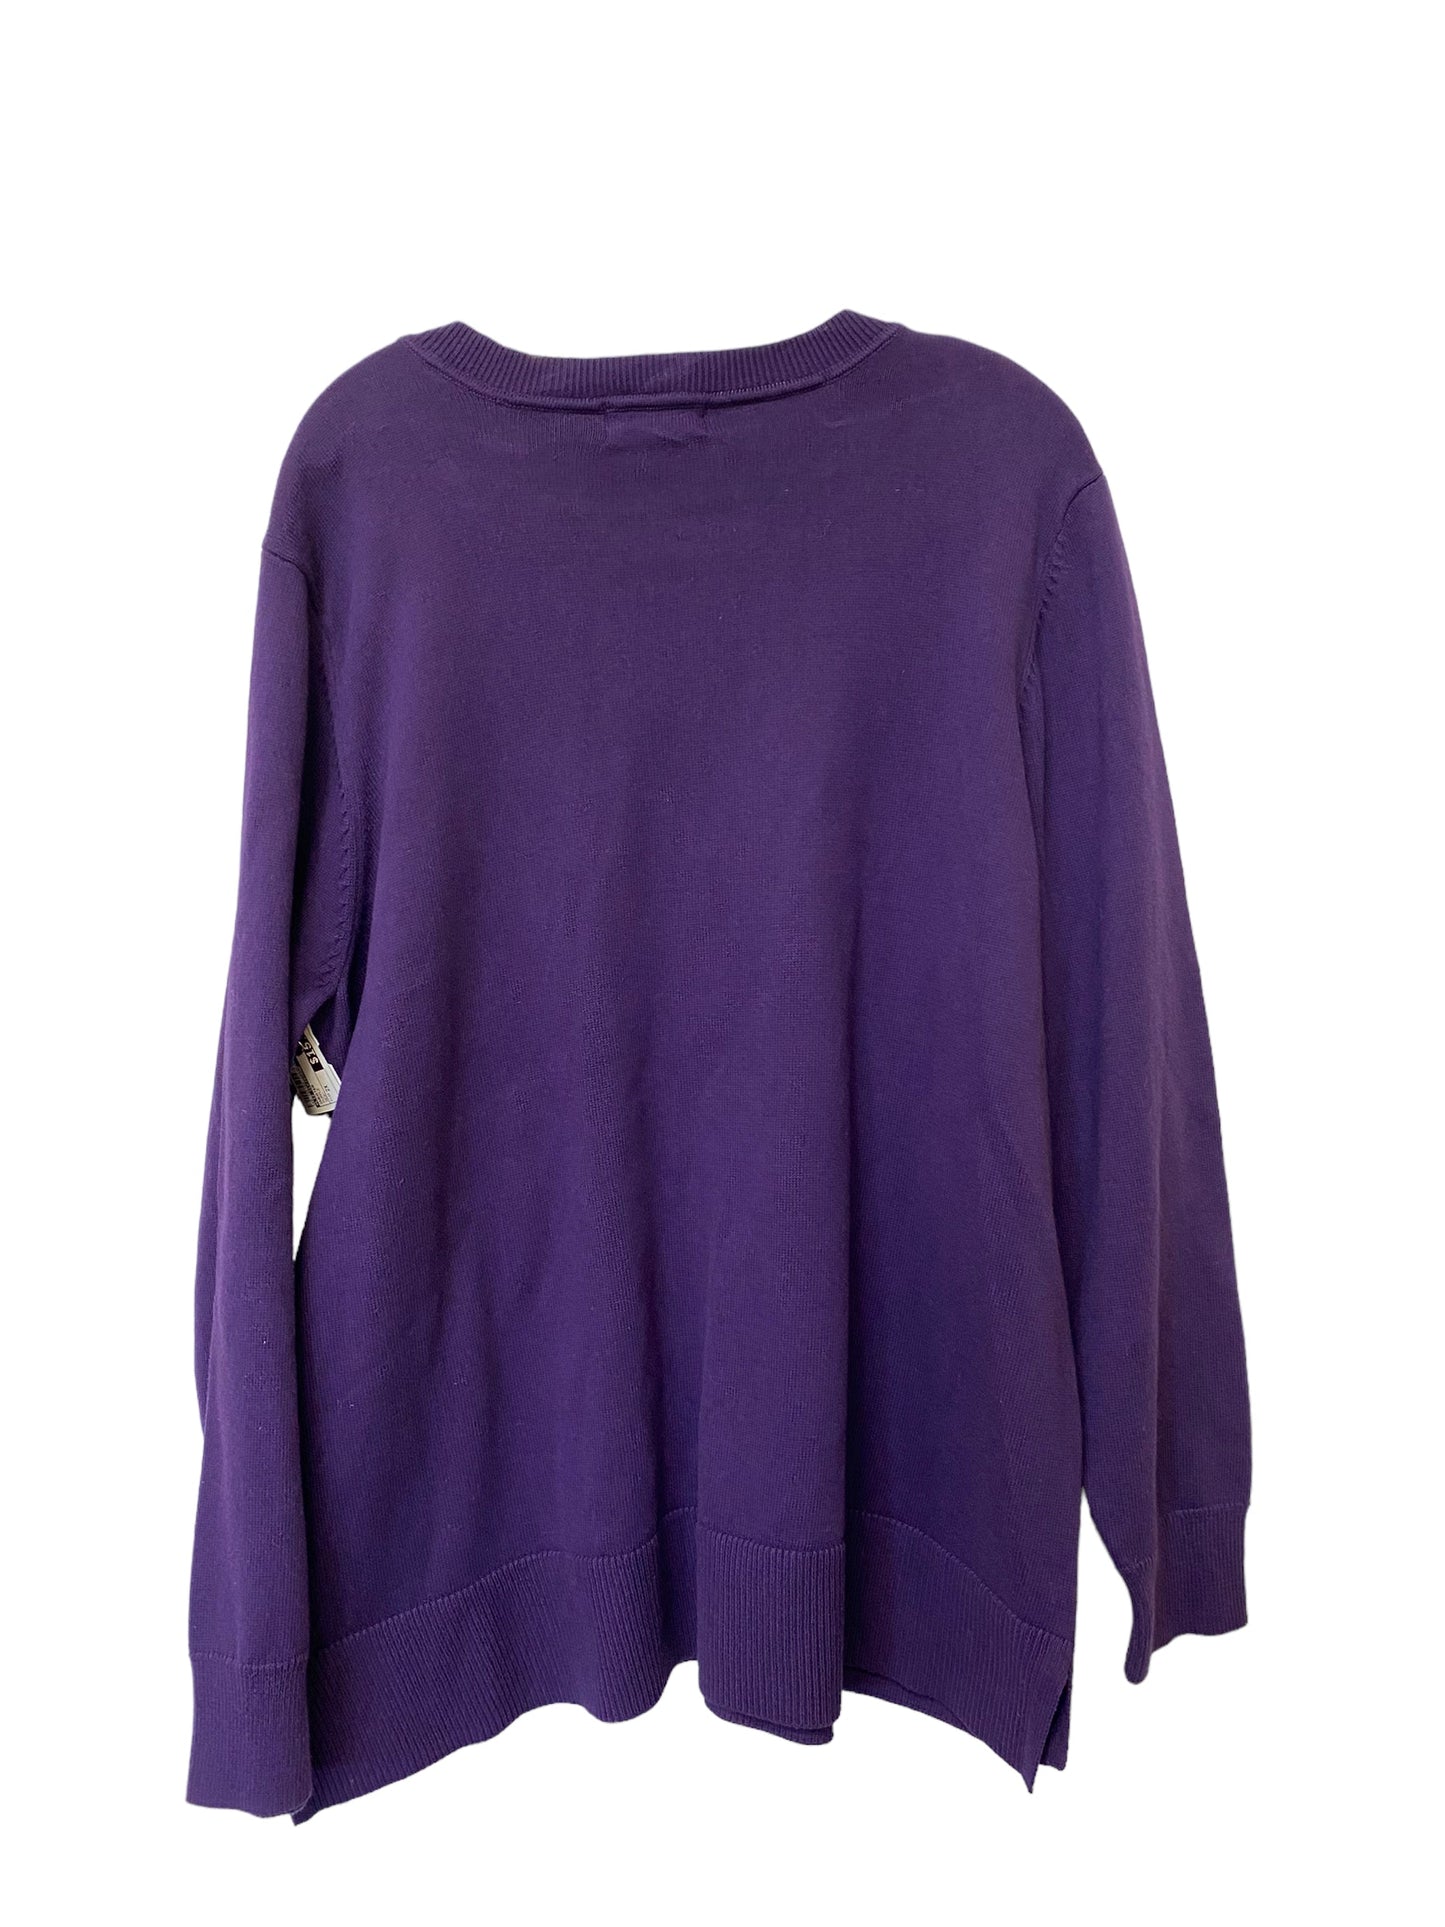 Sweater By Liz Claiborne  Size: 2x